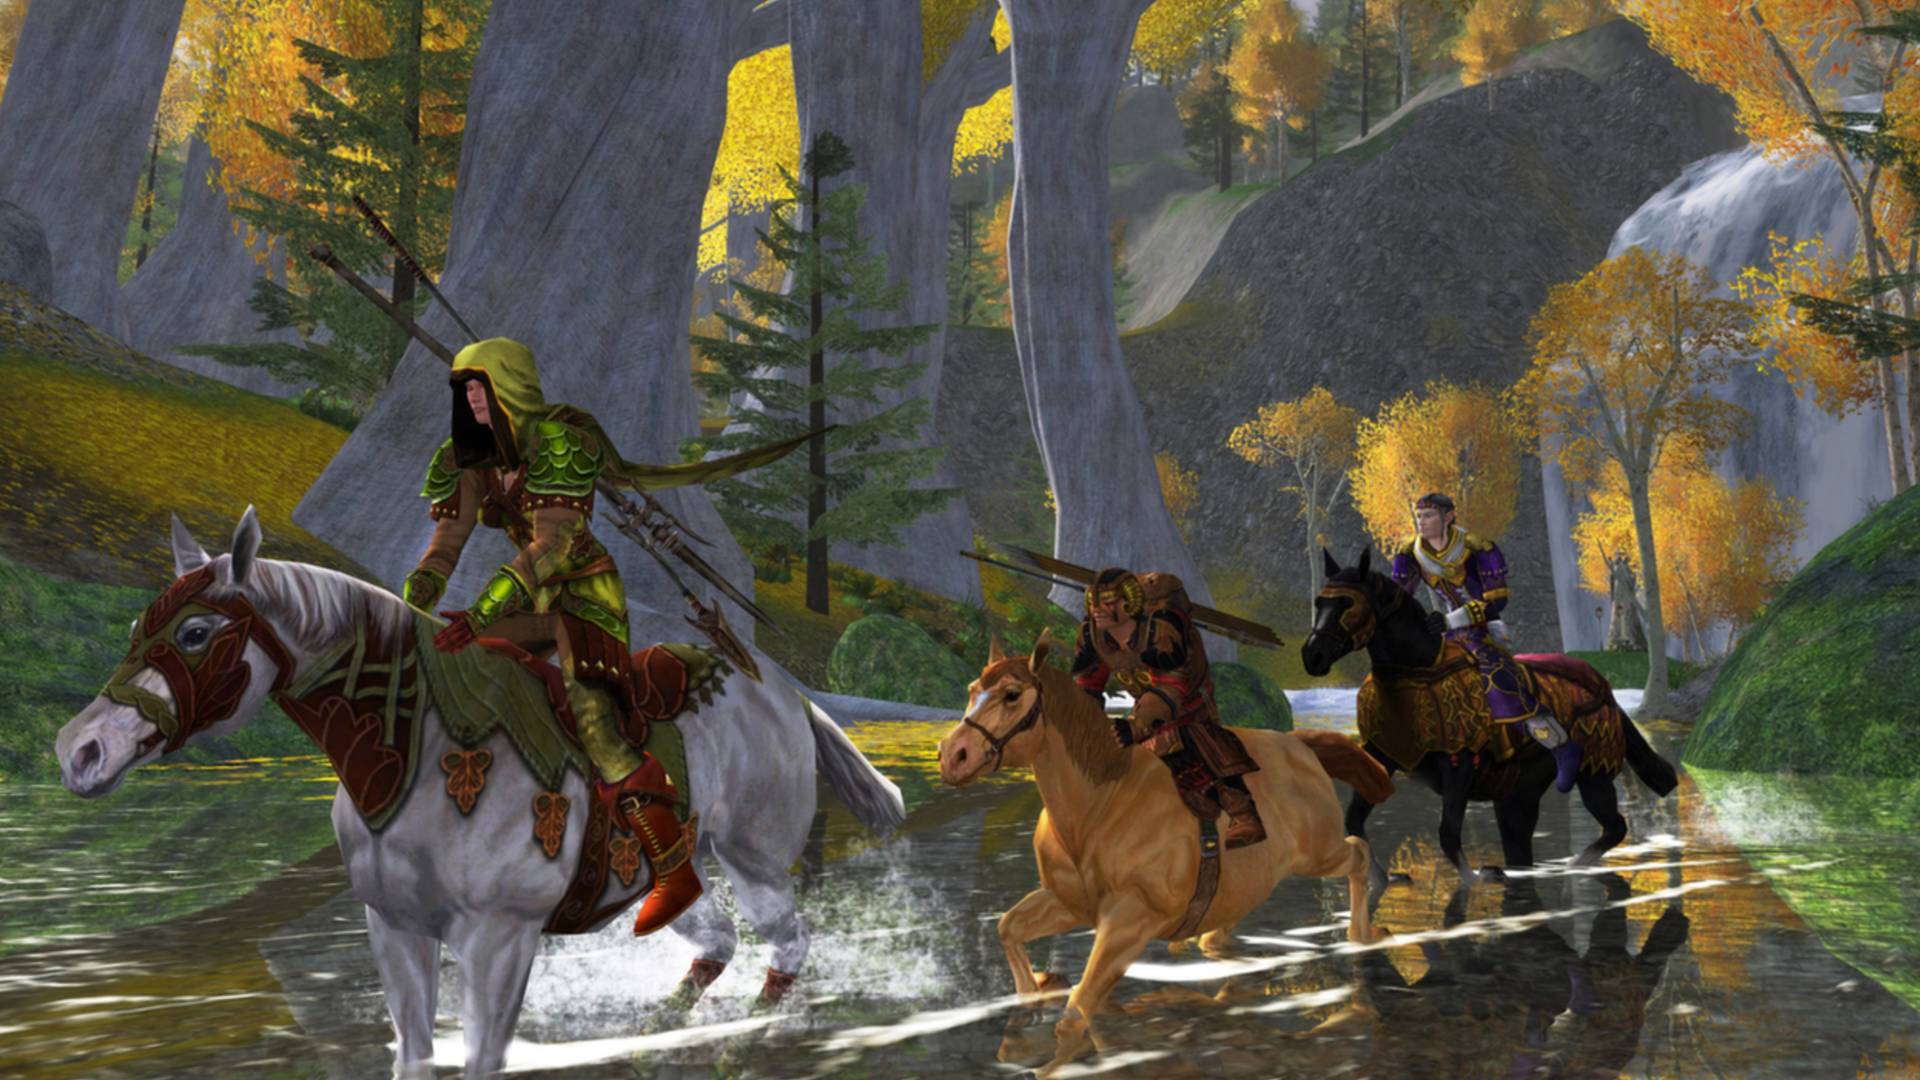 MMOs החינמיים הטובים ביותר: שר הטבעות ברשת. תמונה מציגה תהלוכה של אנשים על סוסים הרוכבים במורד נהר